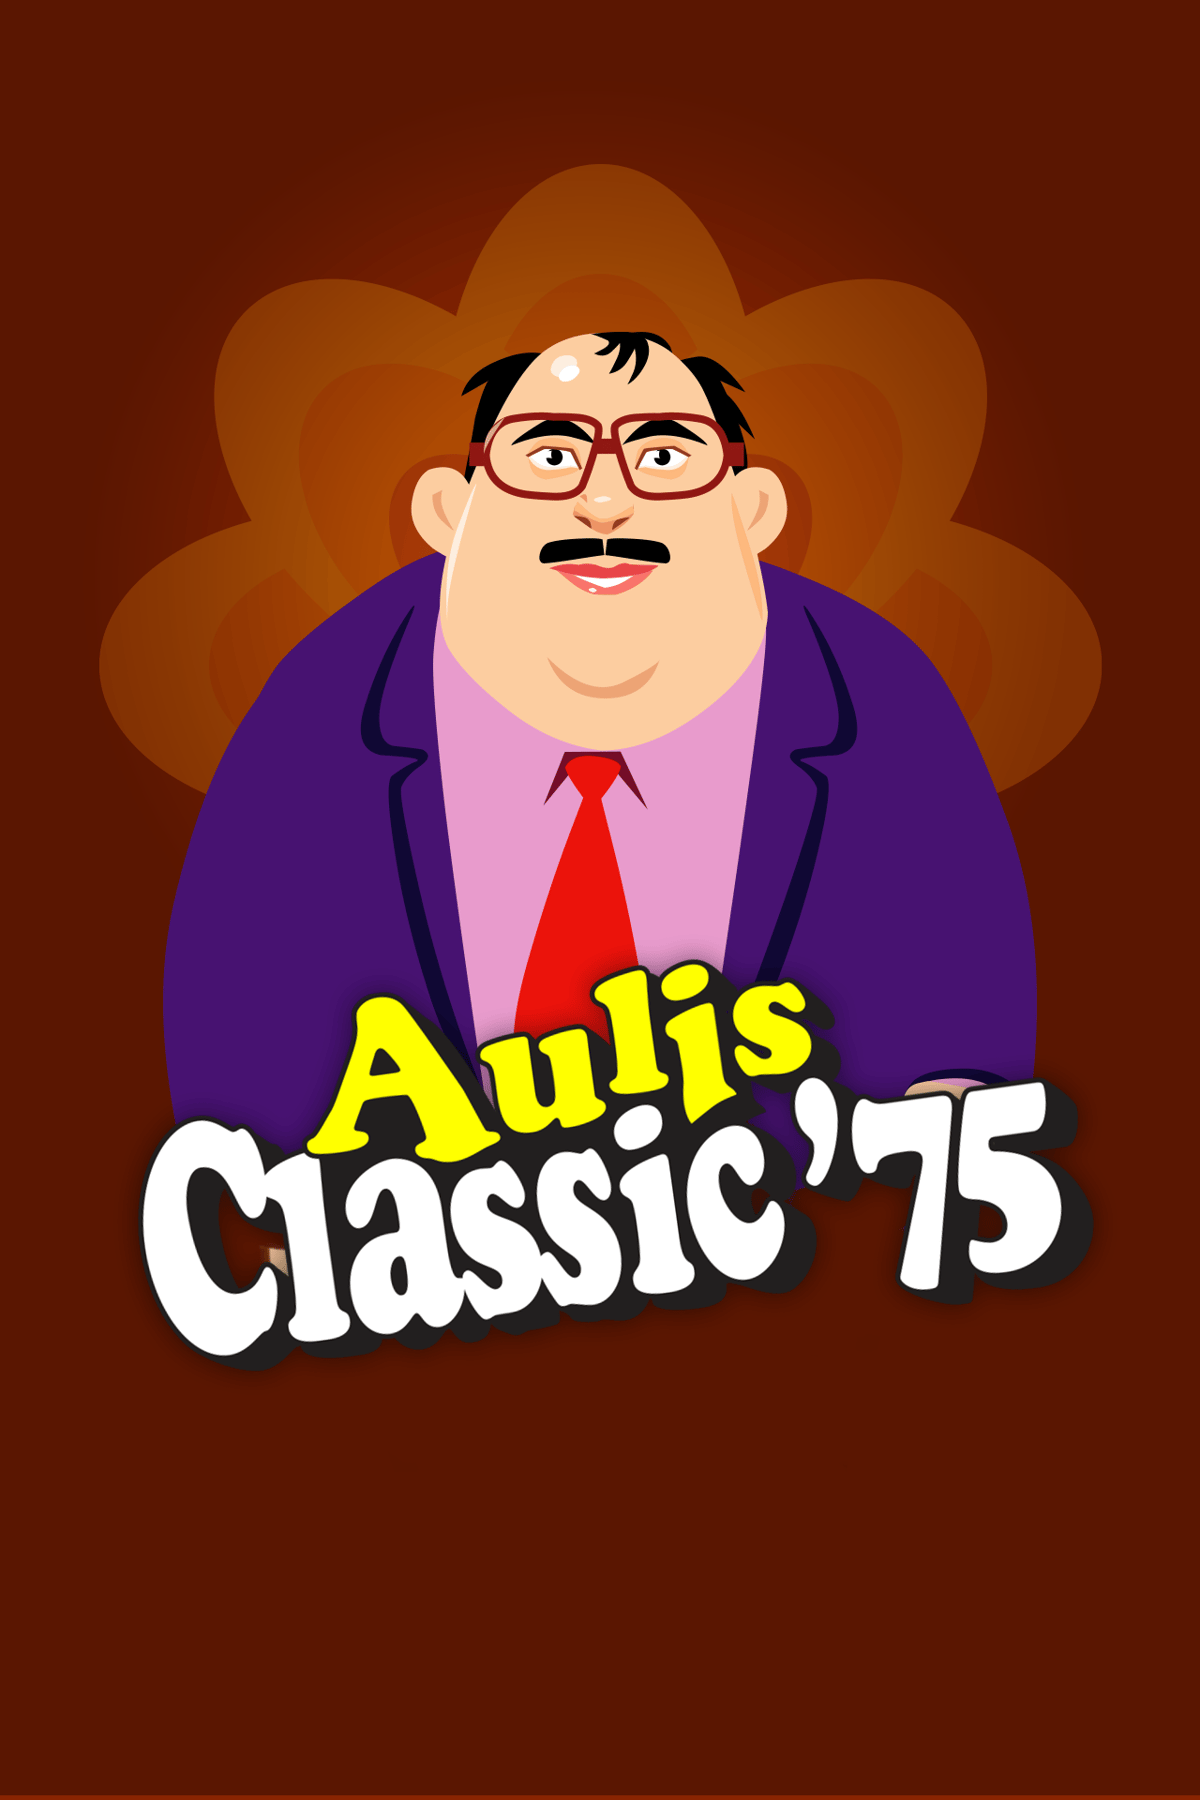 Aulis Classic '75